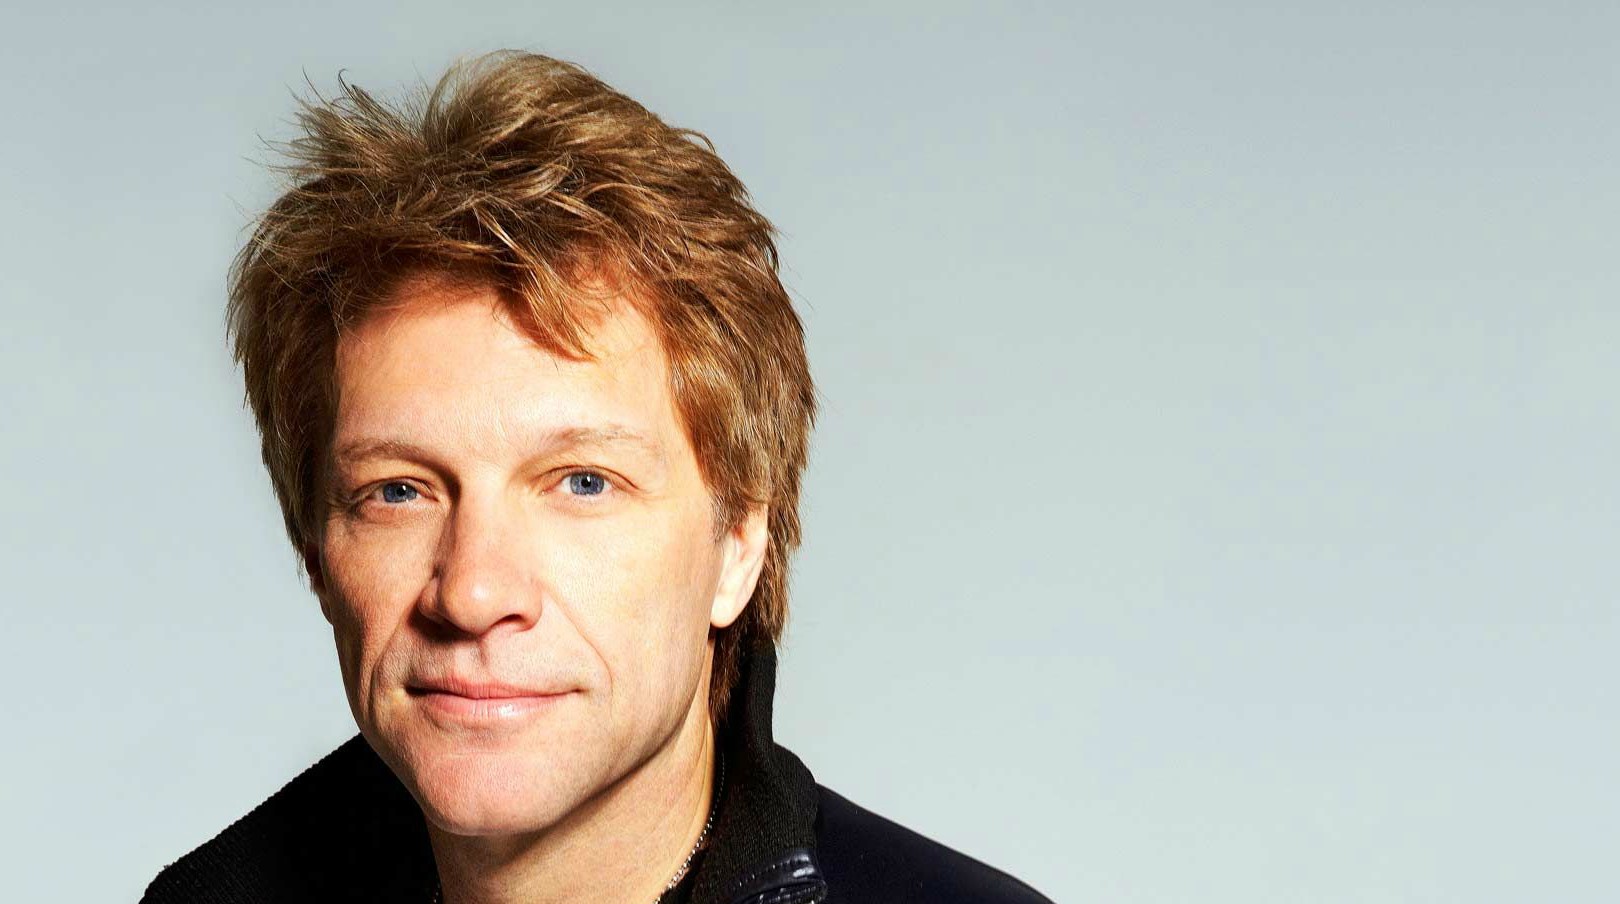 Διακοπές στη Μύκονο κάνει ο Jon Bon Jovi (βίντεο)